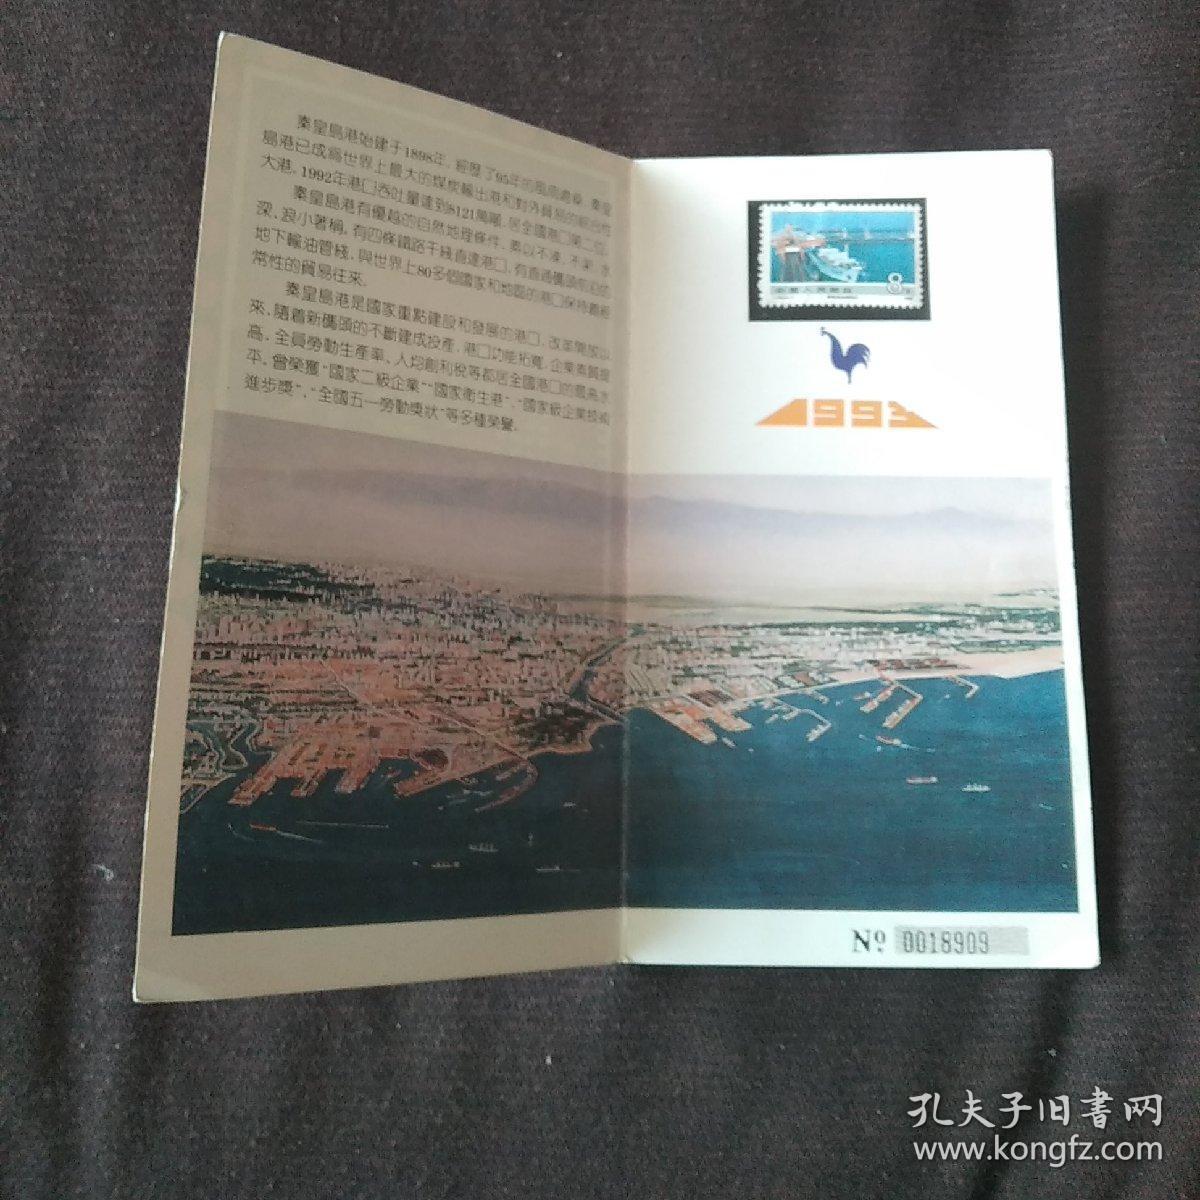 1989-1993纪念秦皇岛开港95周年内有邮票1张8分